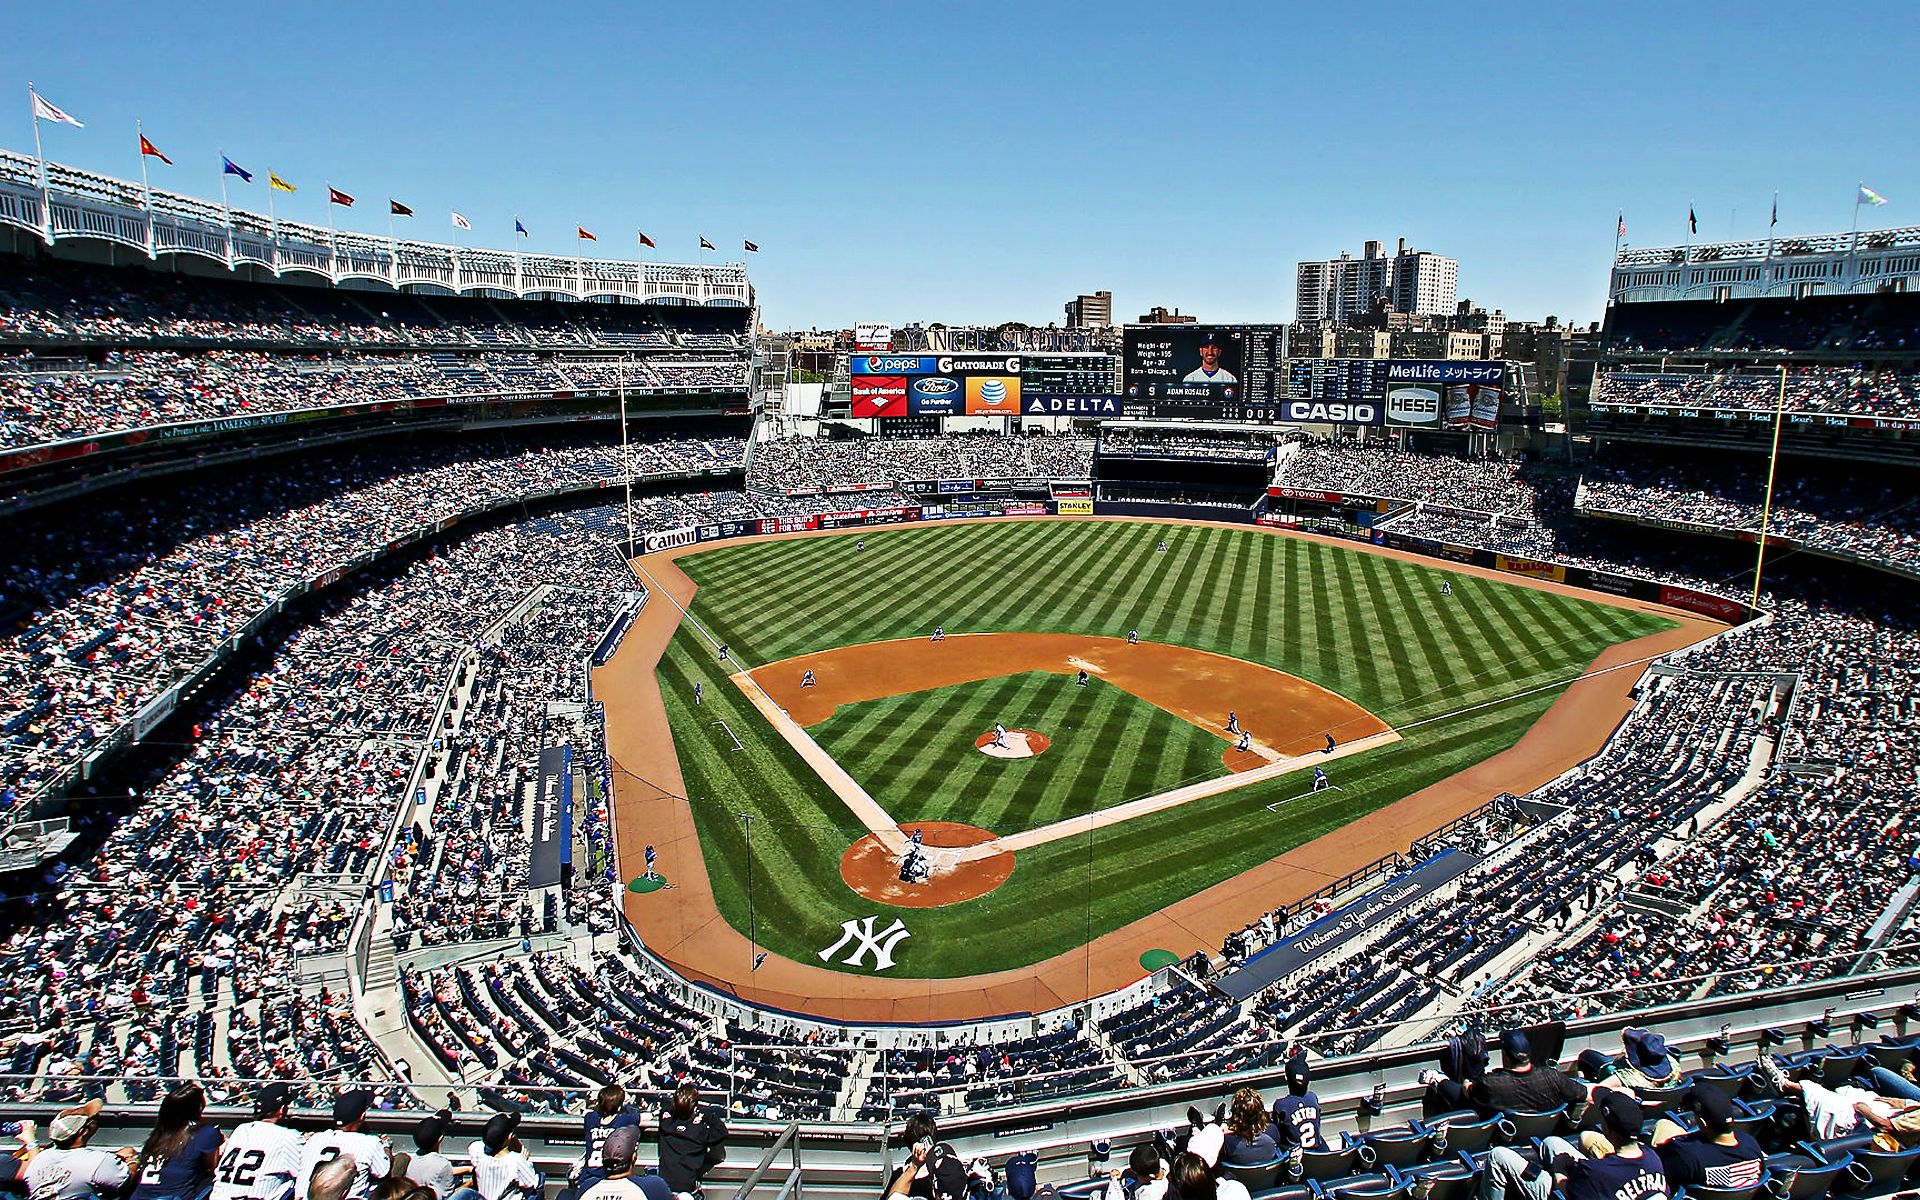 Download wallpaper Yankee Stadium, american baseball stadium, New